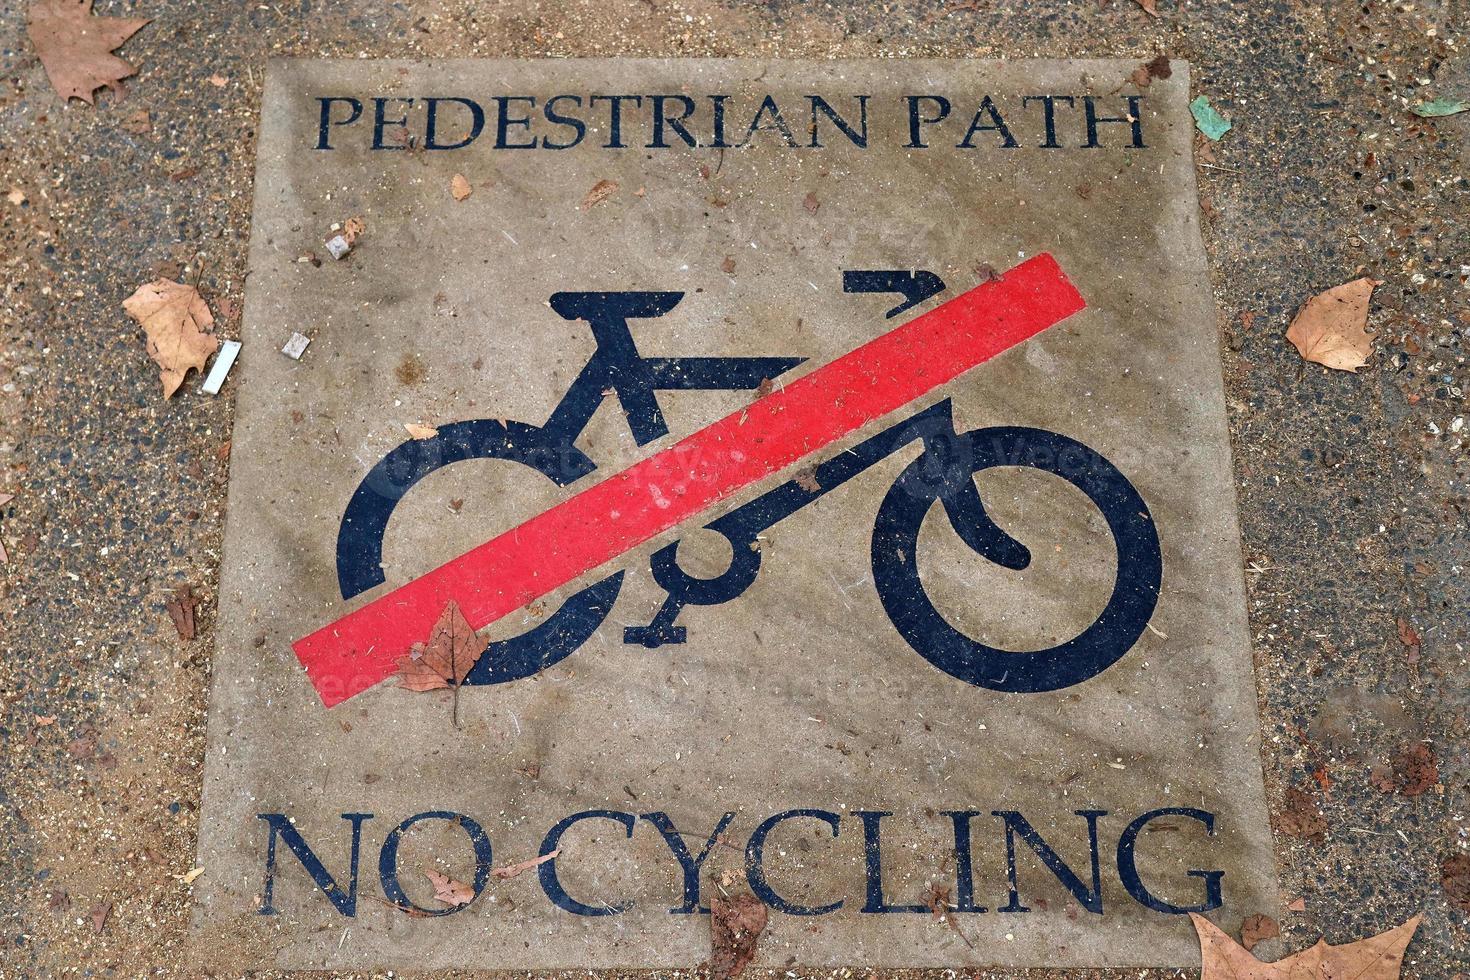 geschilderde fietsborden op asfalt gevonden in de stadsstraten van duitsland. foto